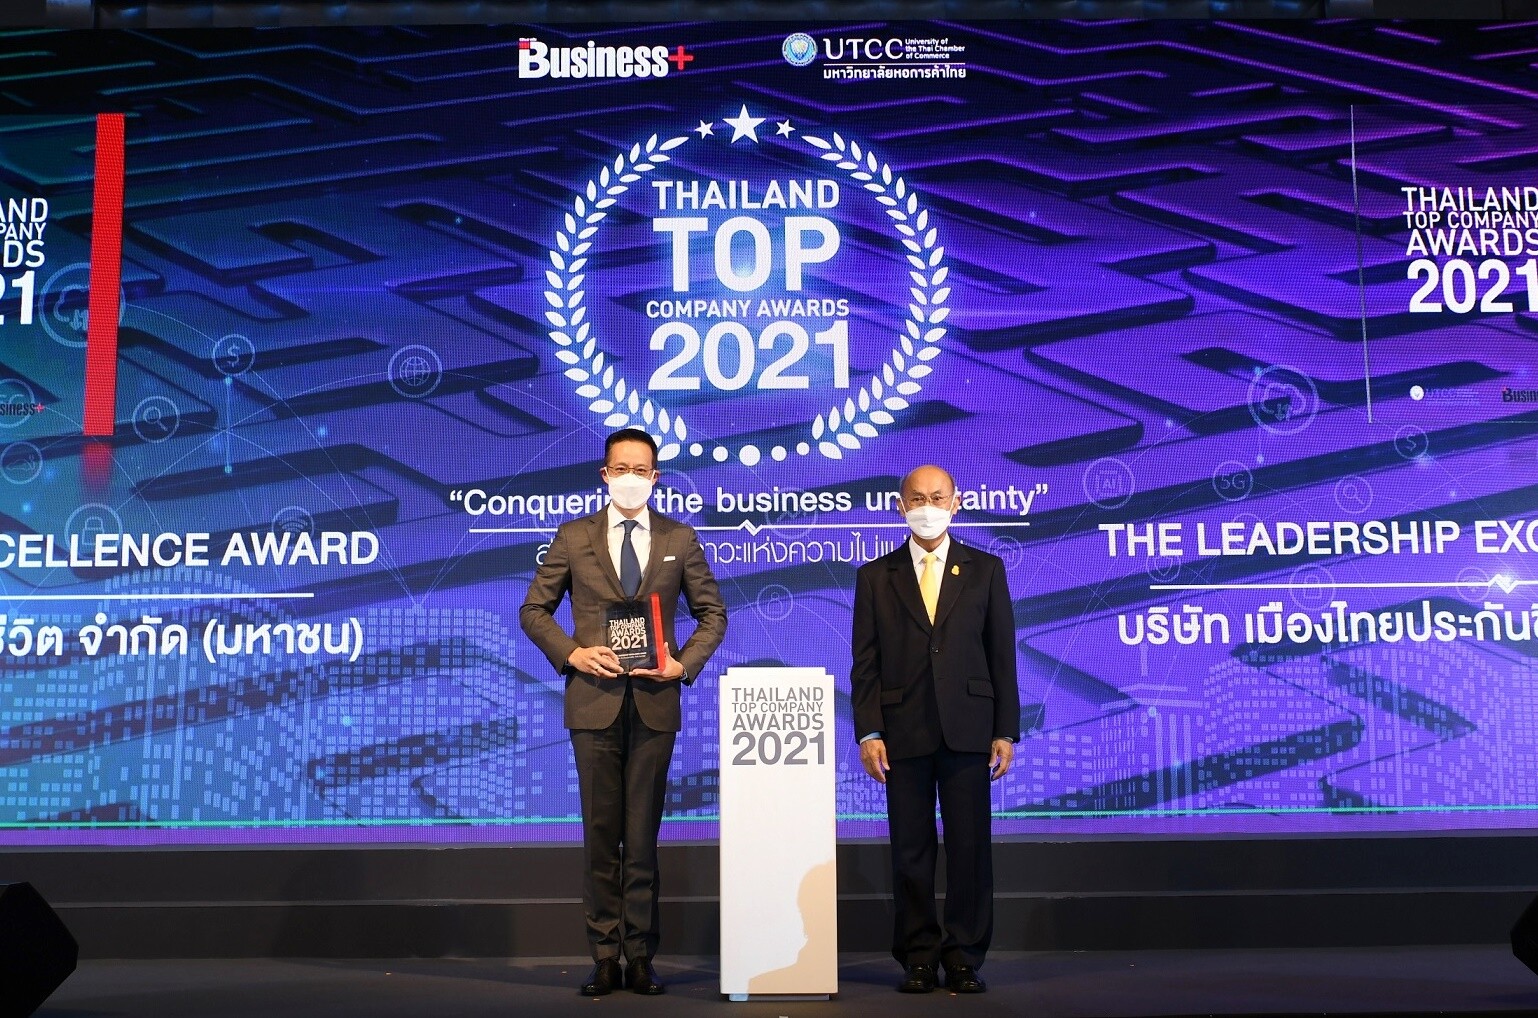 เมืองไทยประกันชีวิต รับ 2 รางวัลสุดยอดองค์กรธุรกิจไทย   "THAILAND TOP COMPANY AWARDS 2021"